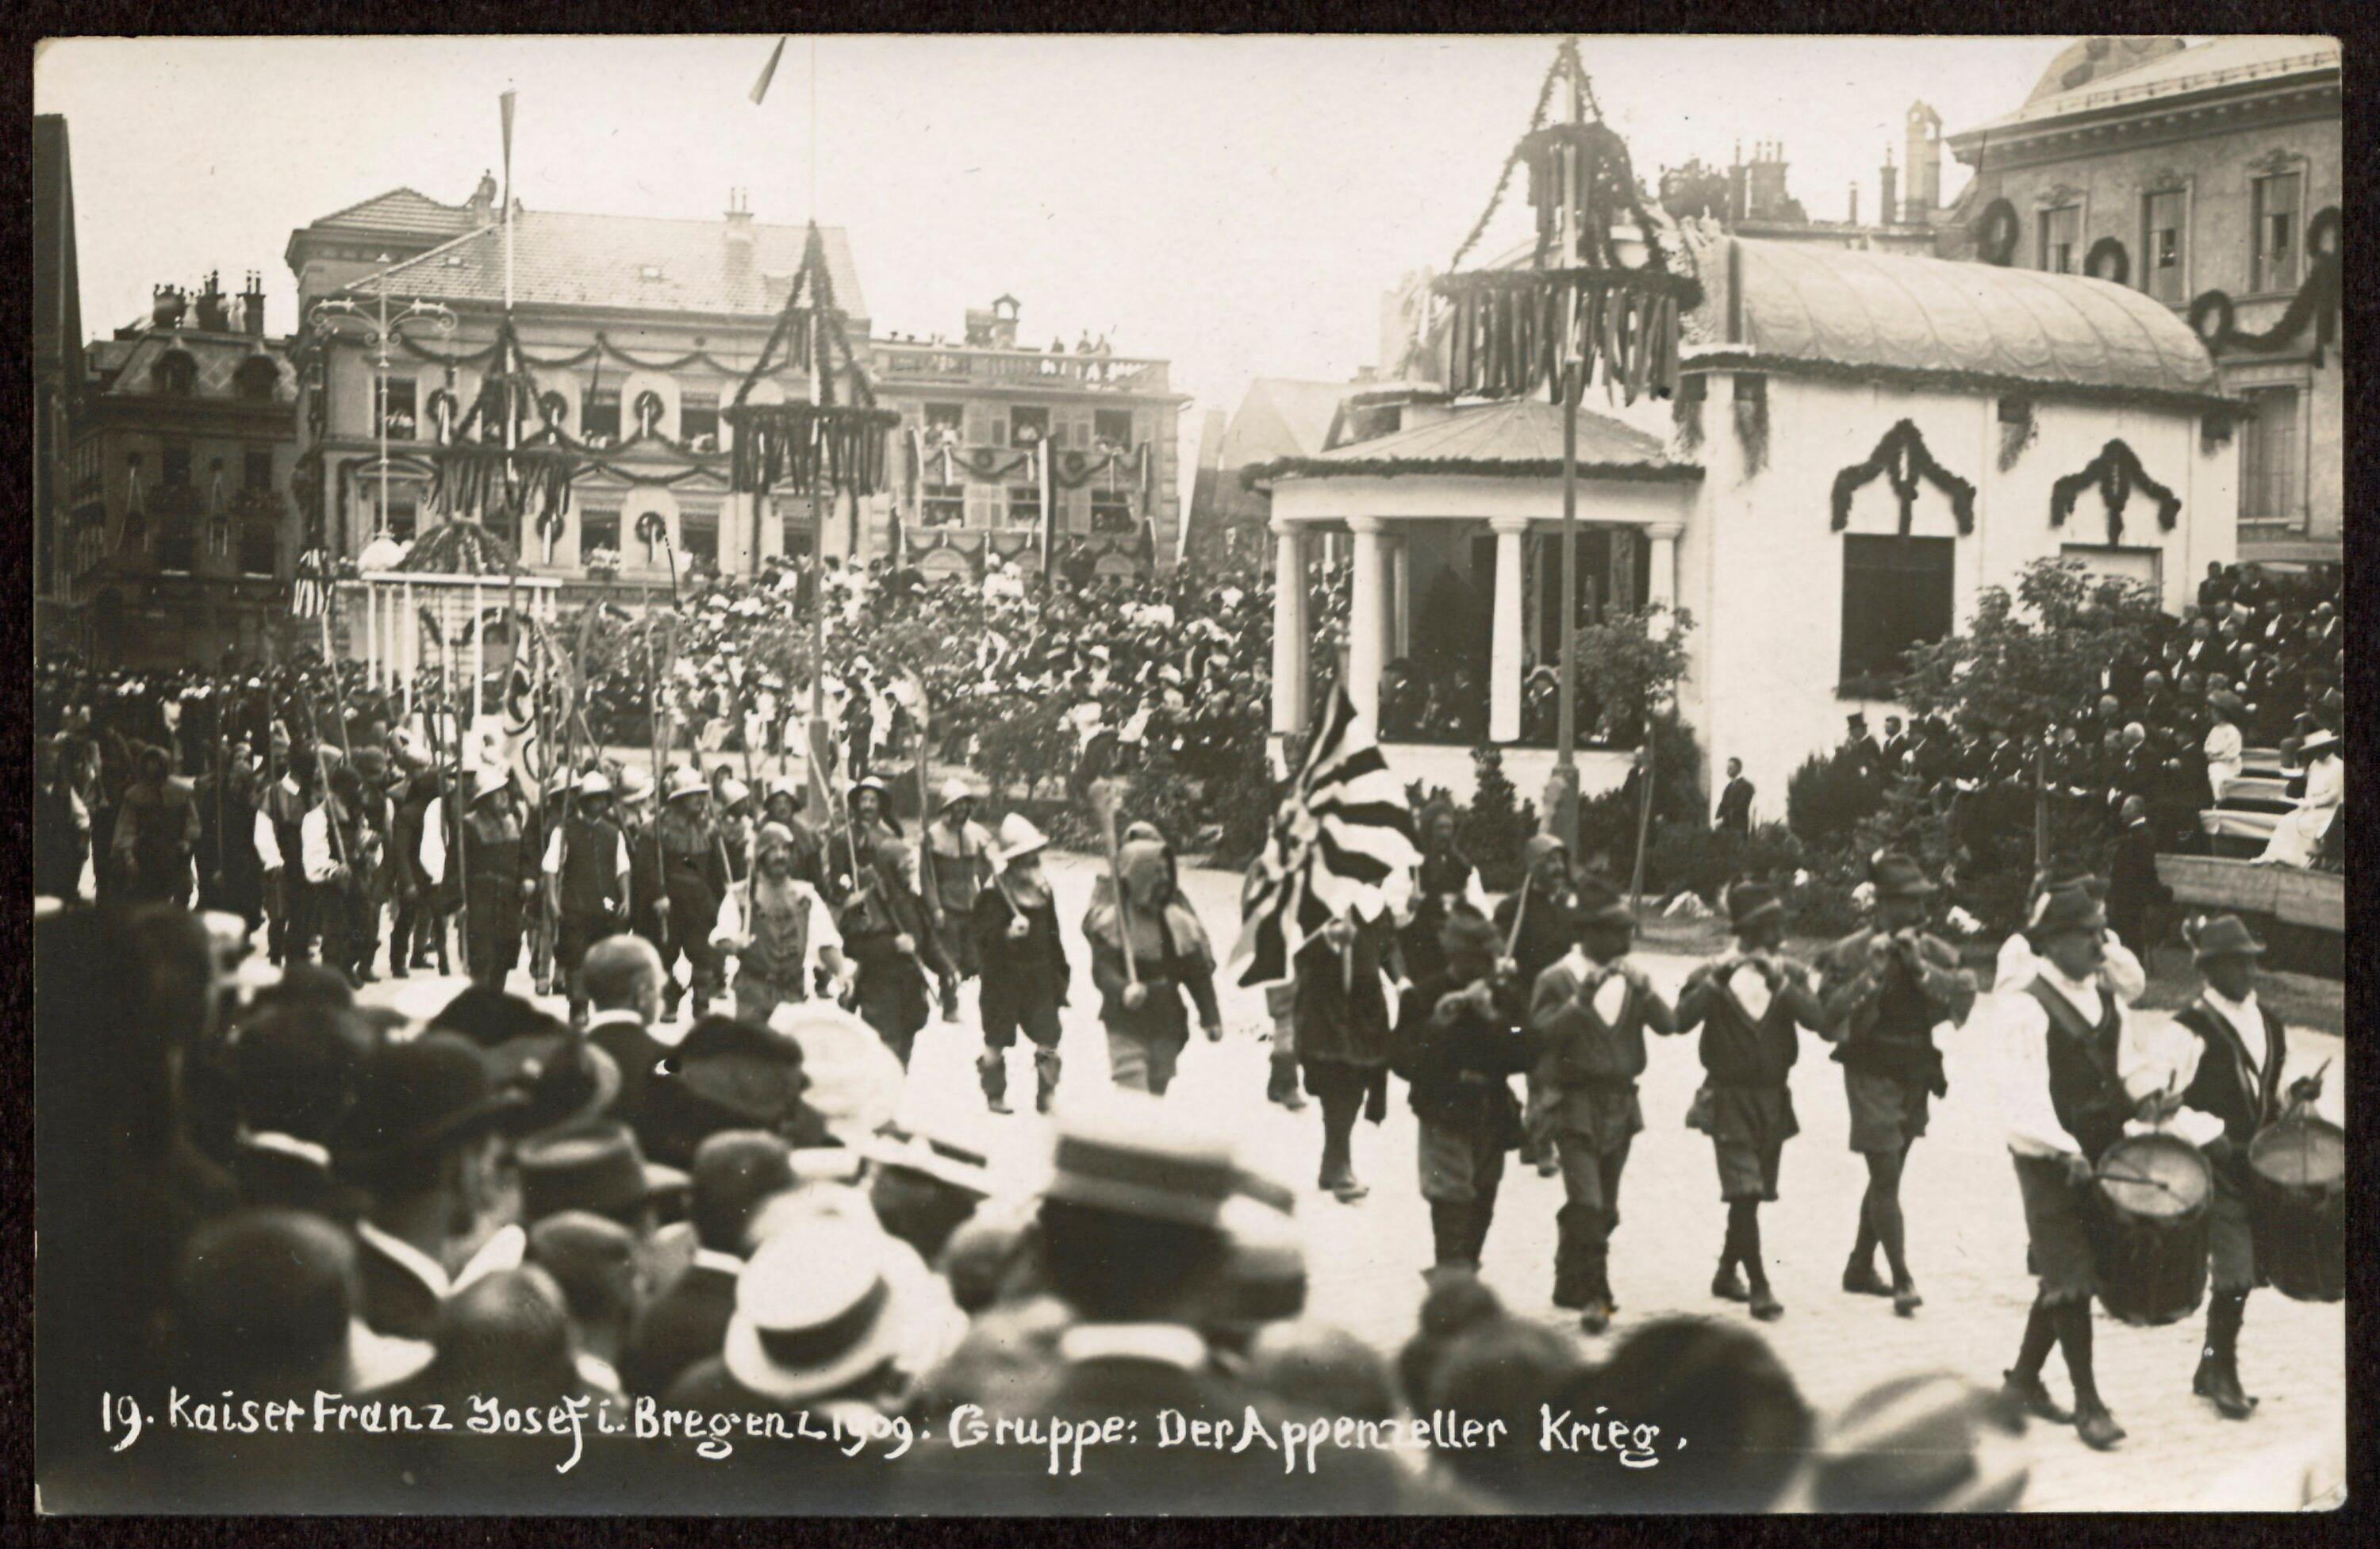 Kaiser Franz Josef I. i. Bregenz 1909. Gruppe: Der Appenzeller Krieg></div>


    <hr>
    <div class=